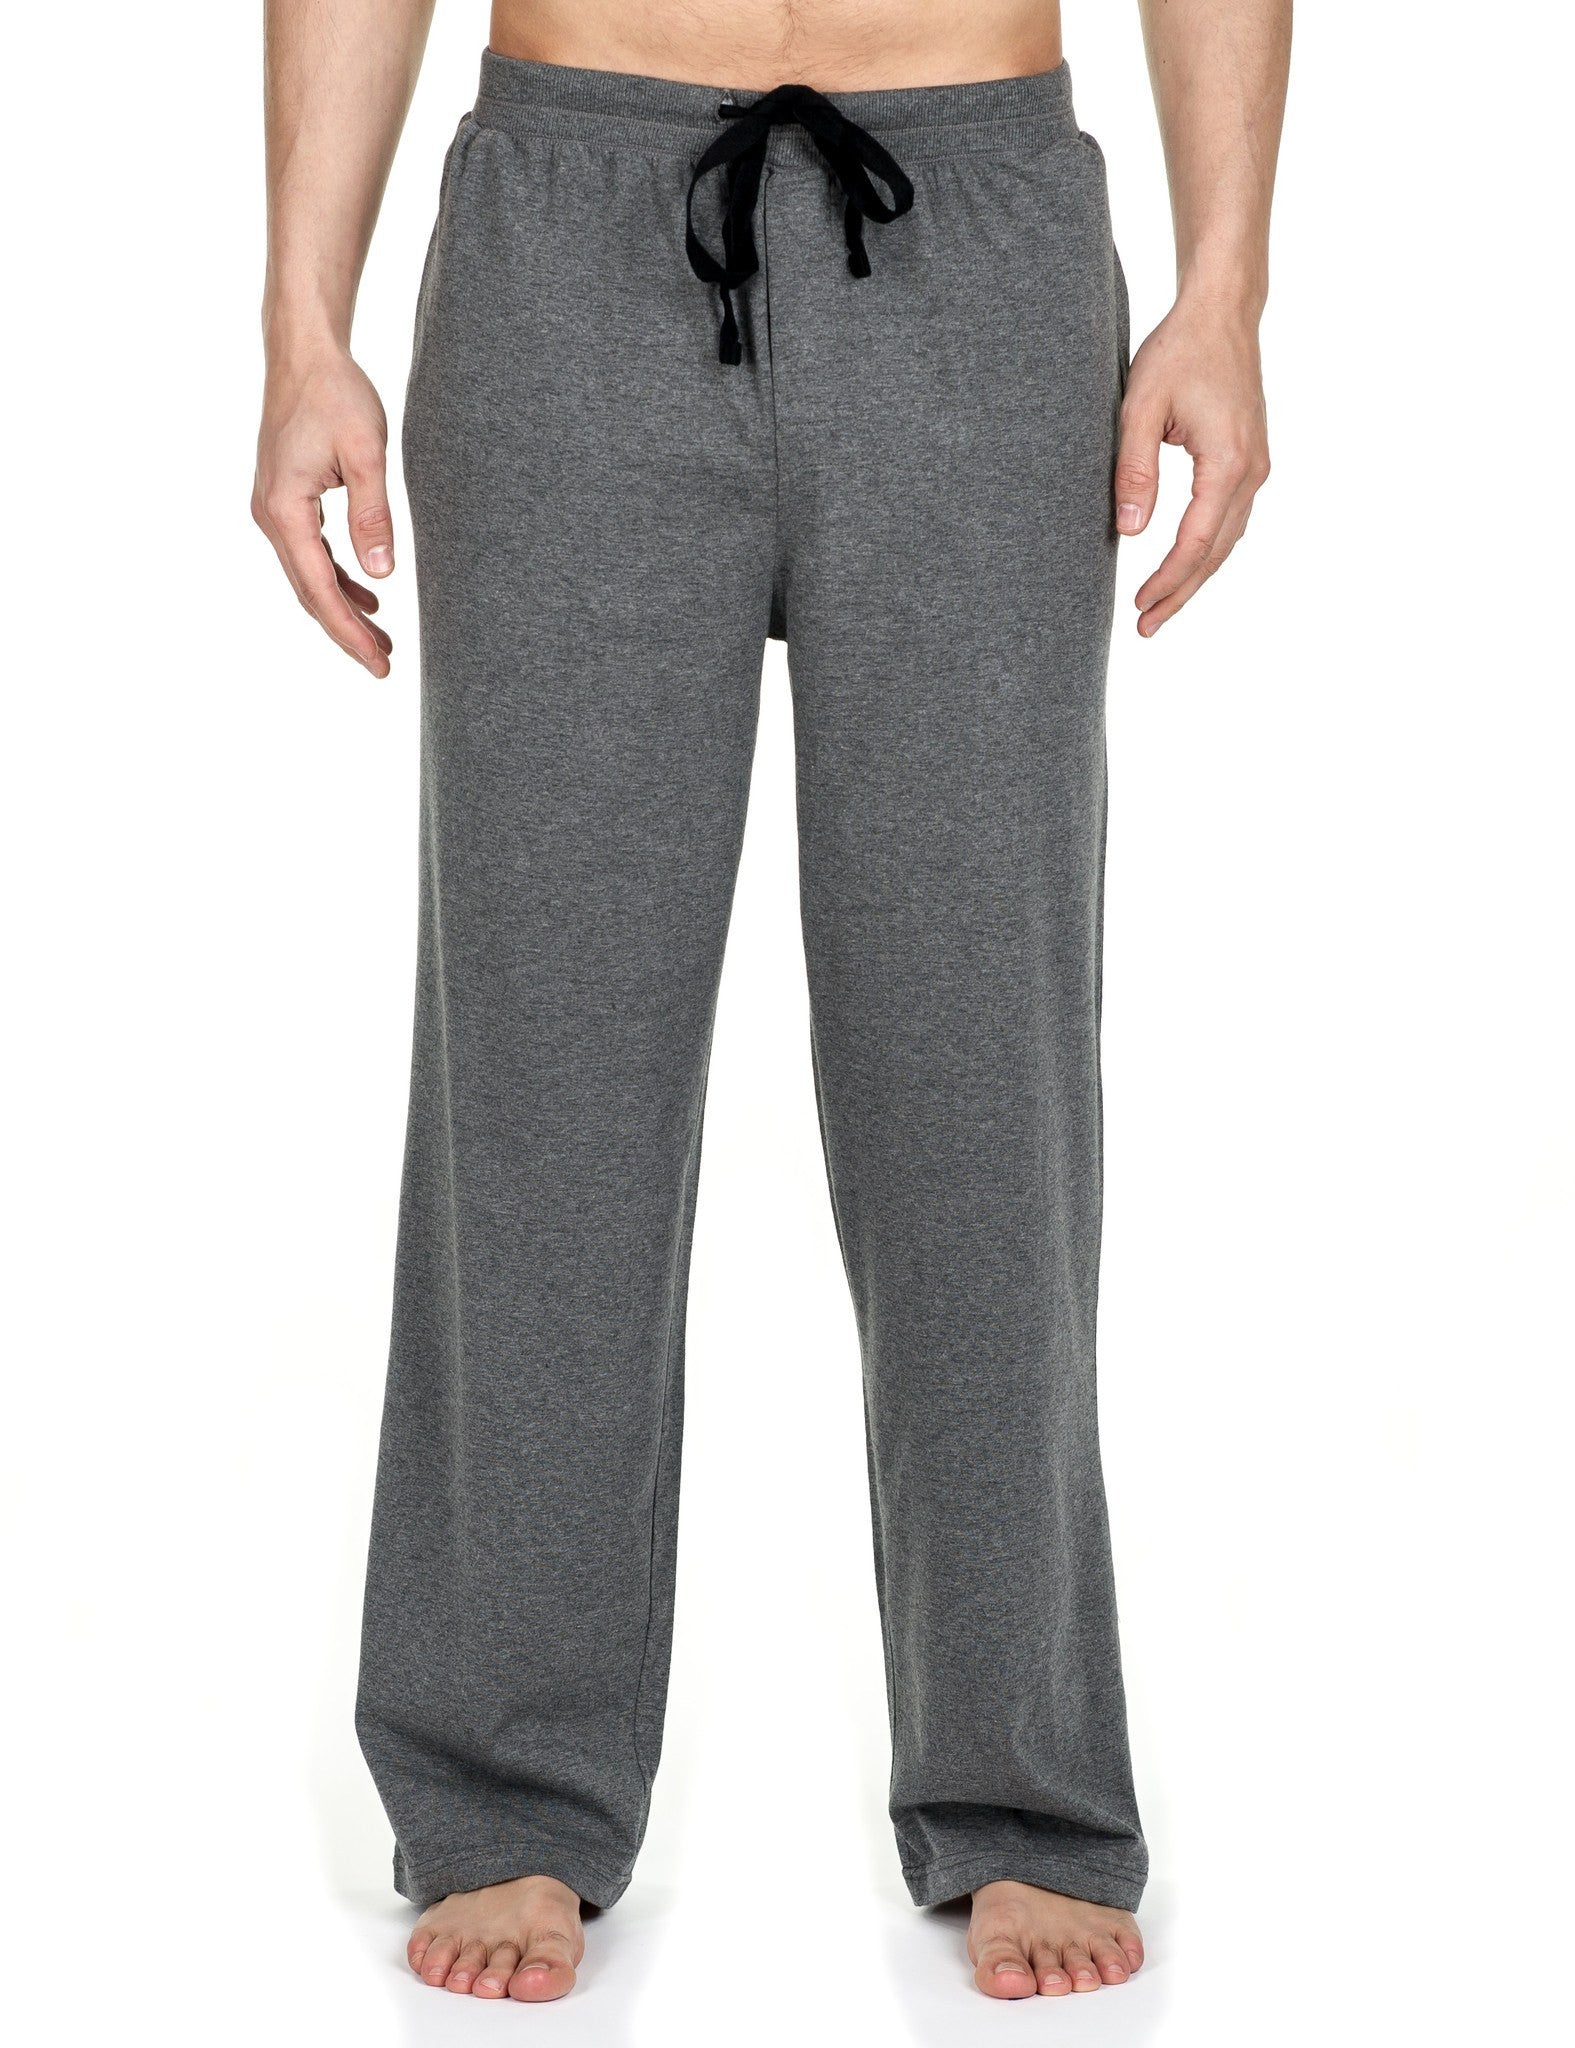 Noble Mount Men's 2-Pack Premium Knit Lounge Pants